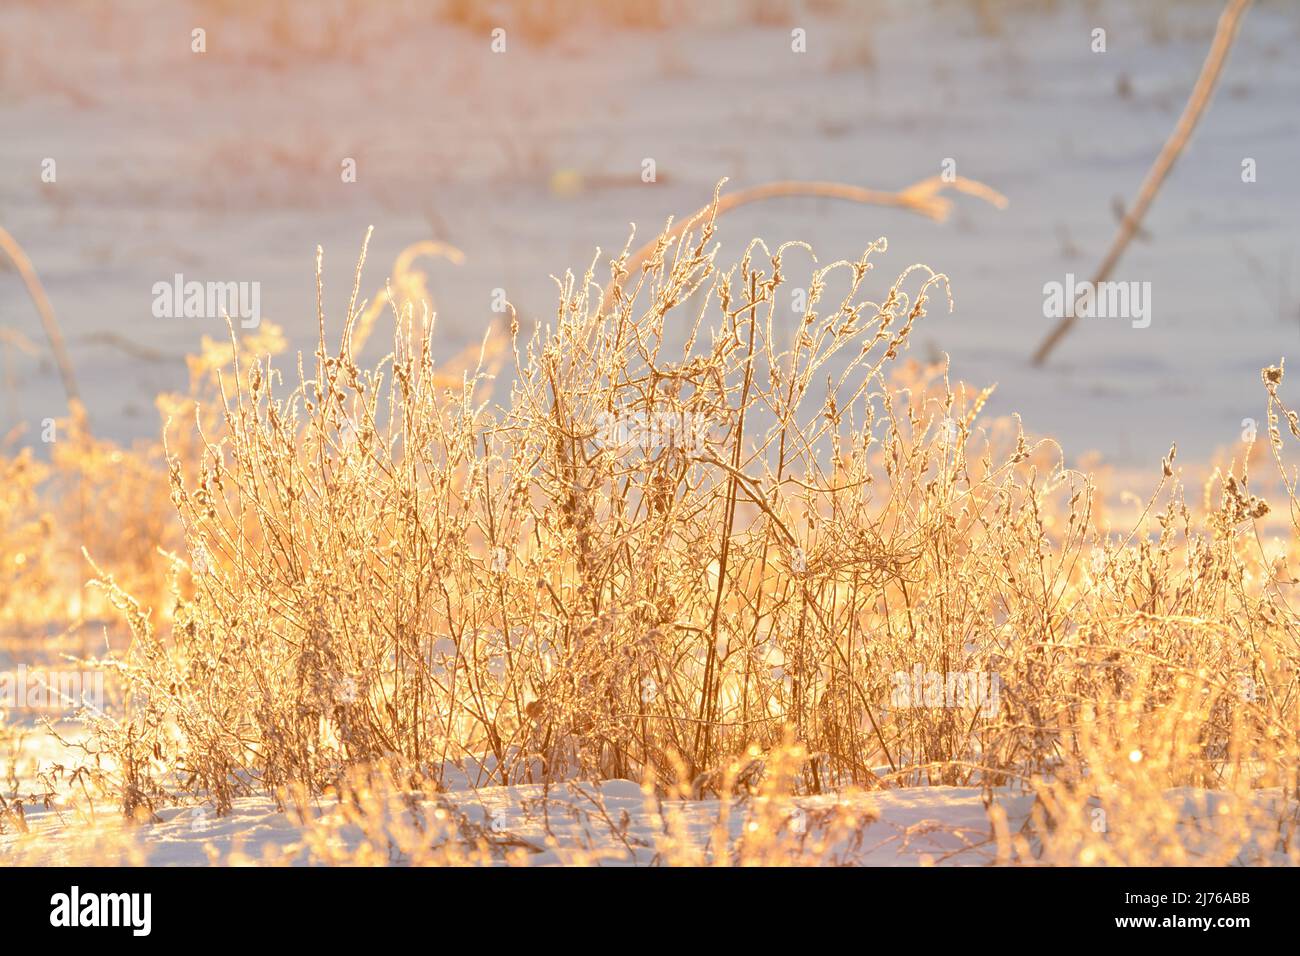 Amanecer en la mañana de invierno con luz brillante sobre plantas secas heladas Foto de stock